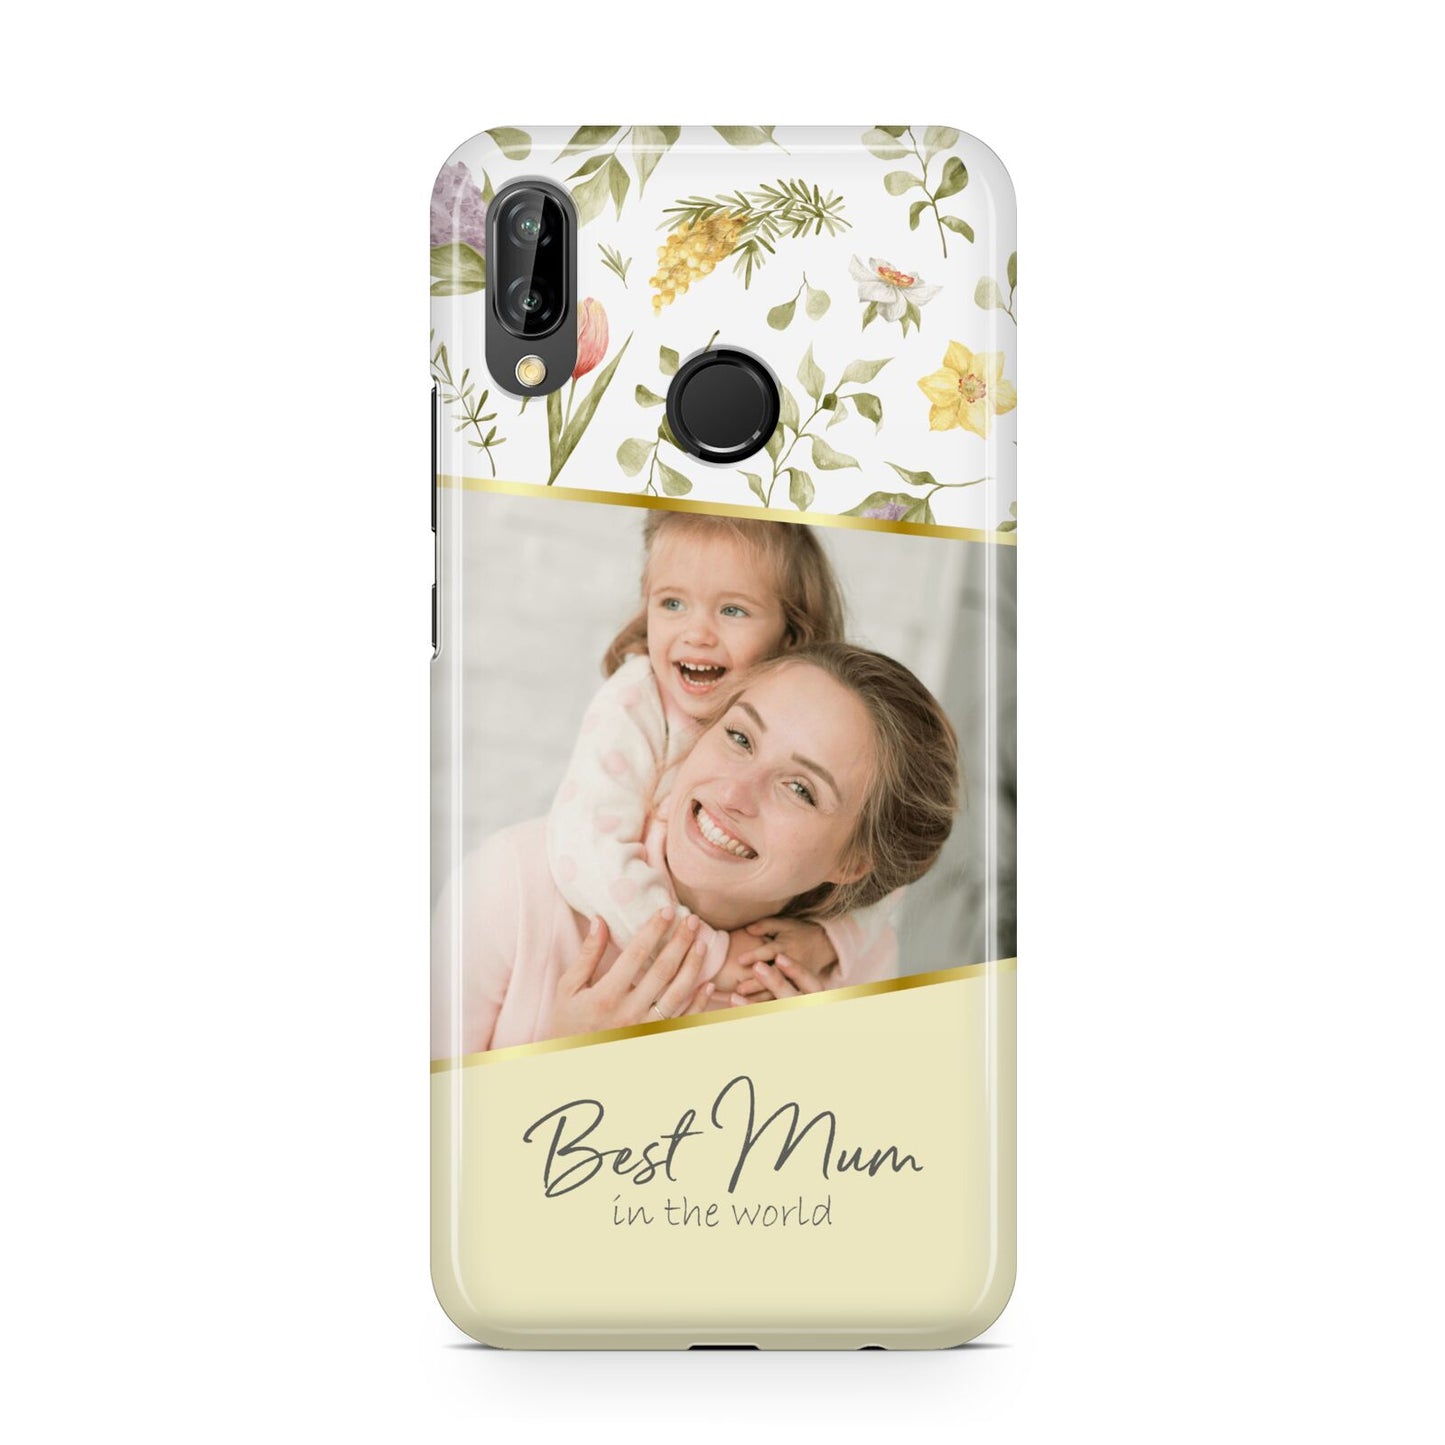 Personalised Best Mum Huawei P20 Lite Phone Case